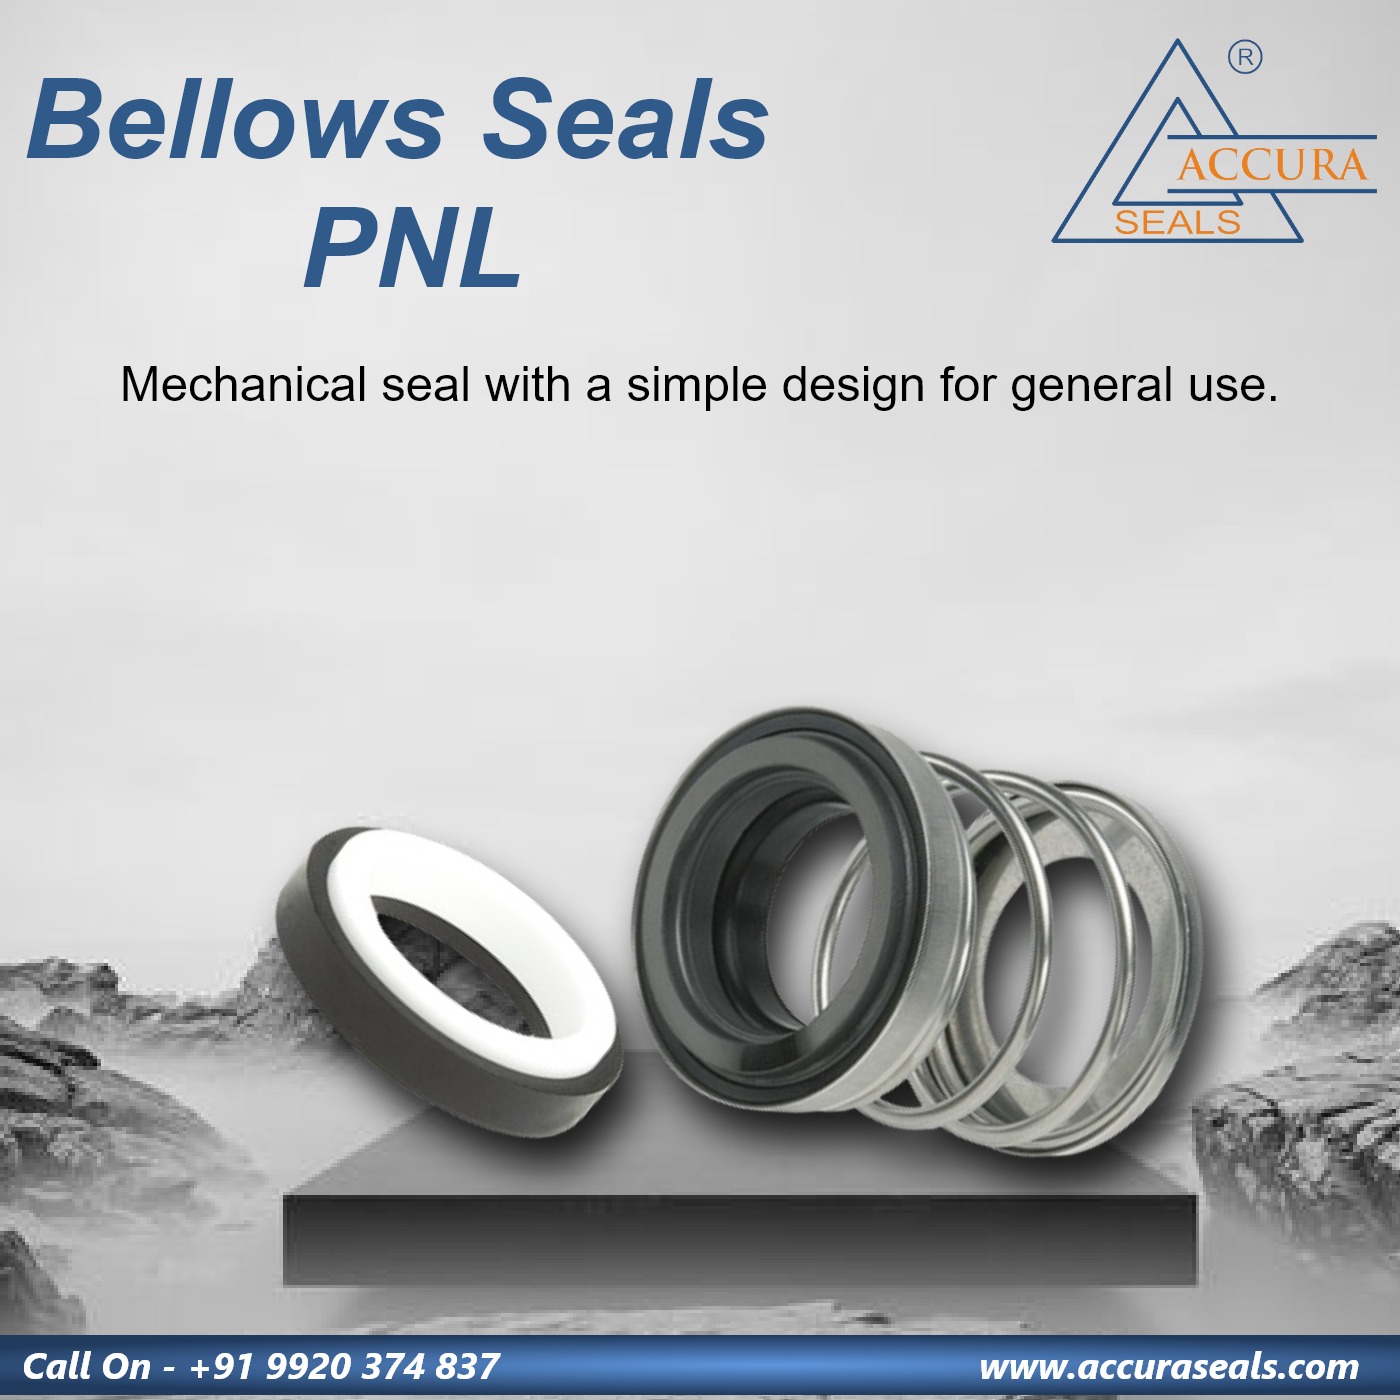 Bellows Seals PNL